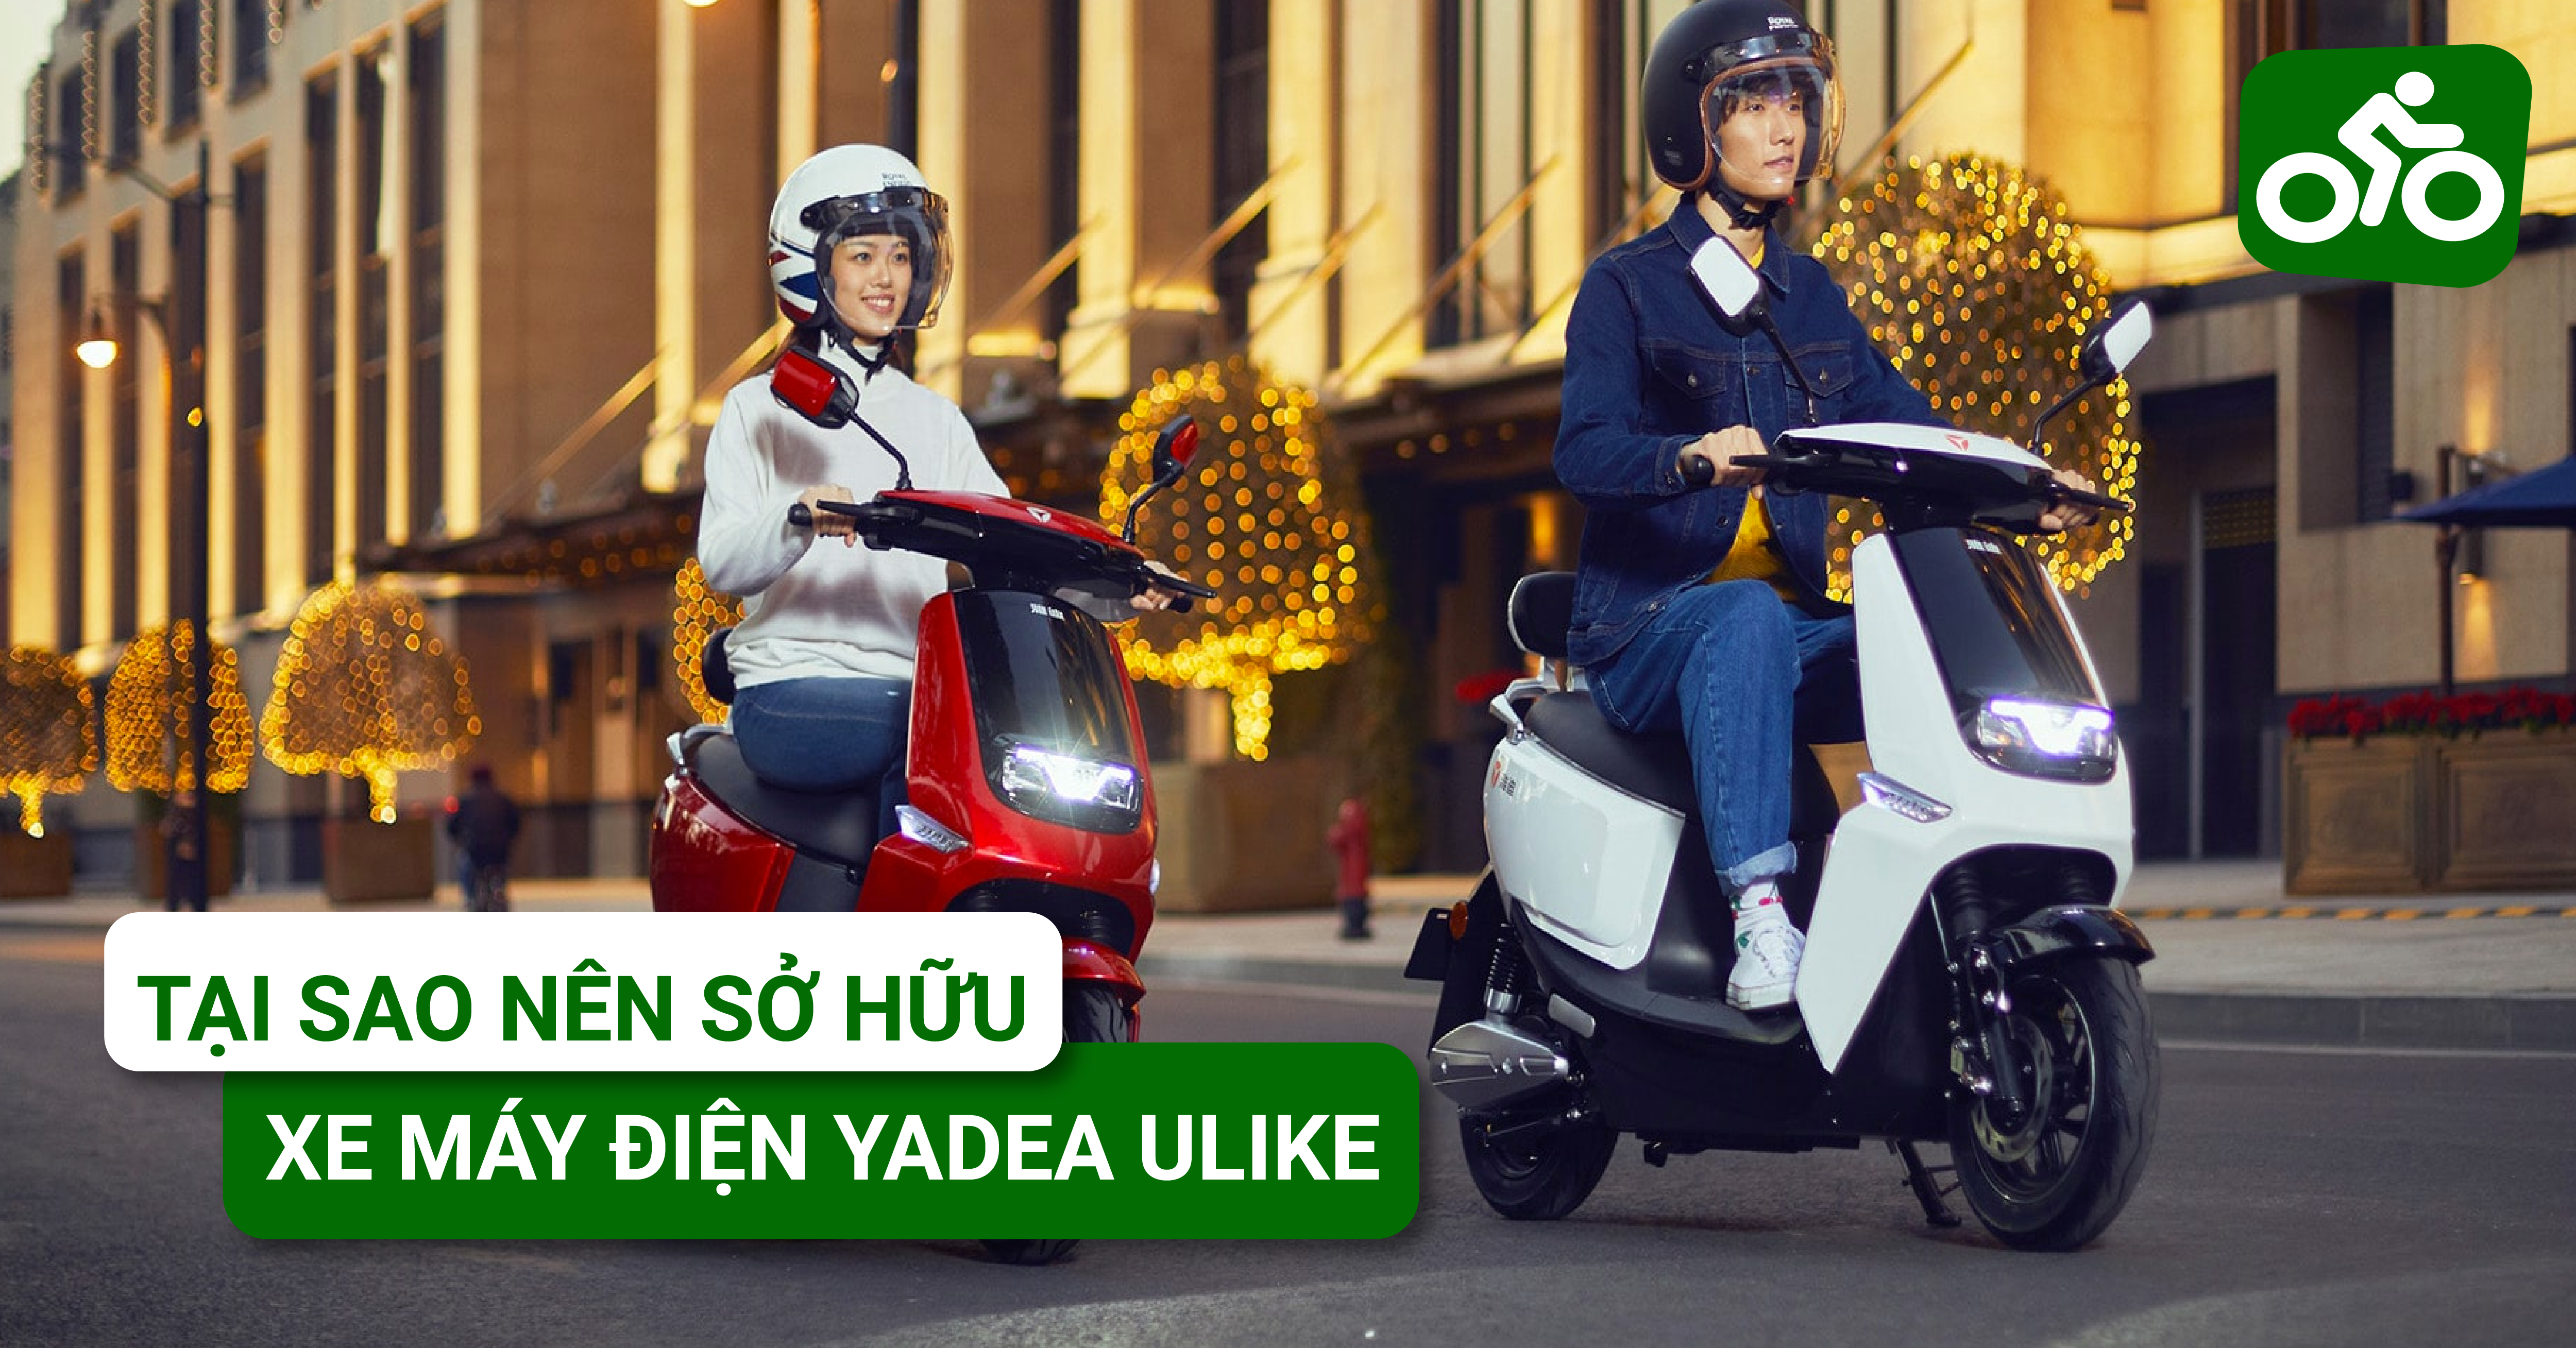 Tại sao nên sở hữu một chiếc xe máy điện YADEA Ulike cho mình?